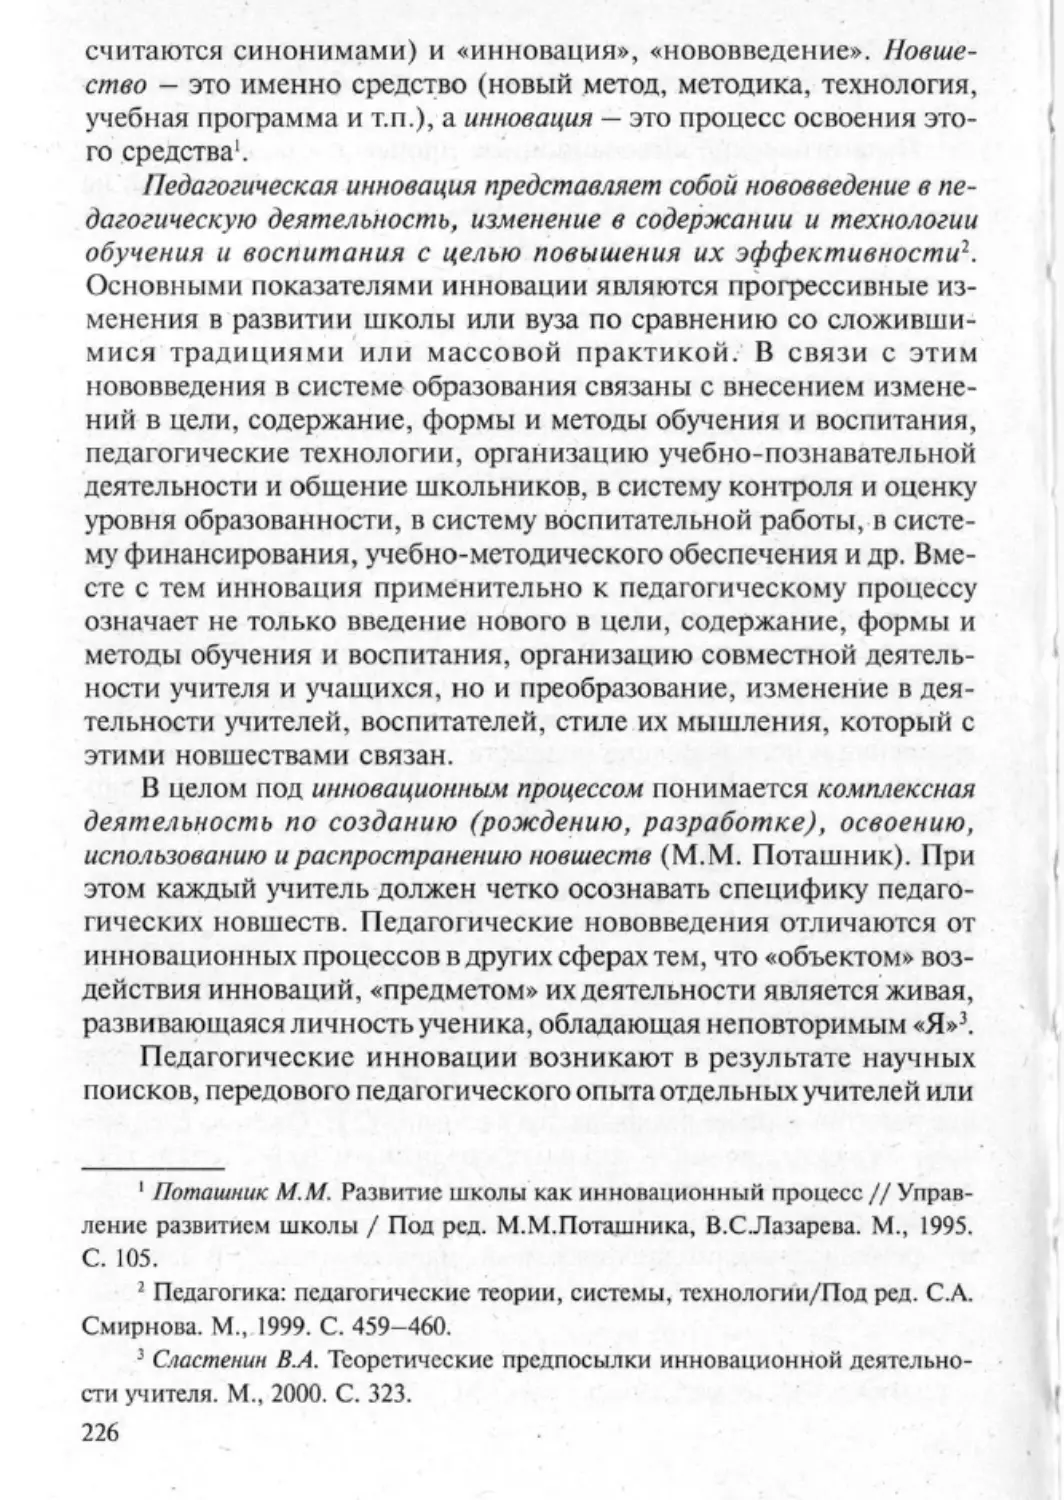 Загрекова Л.В., Николаева В.В - 0227